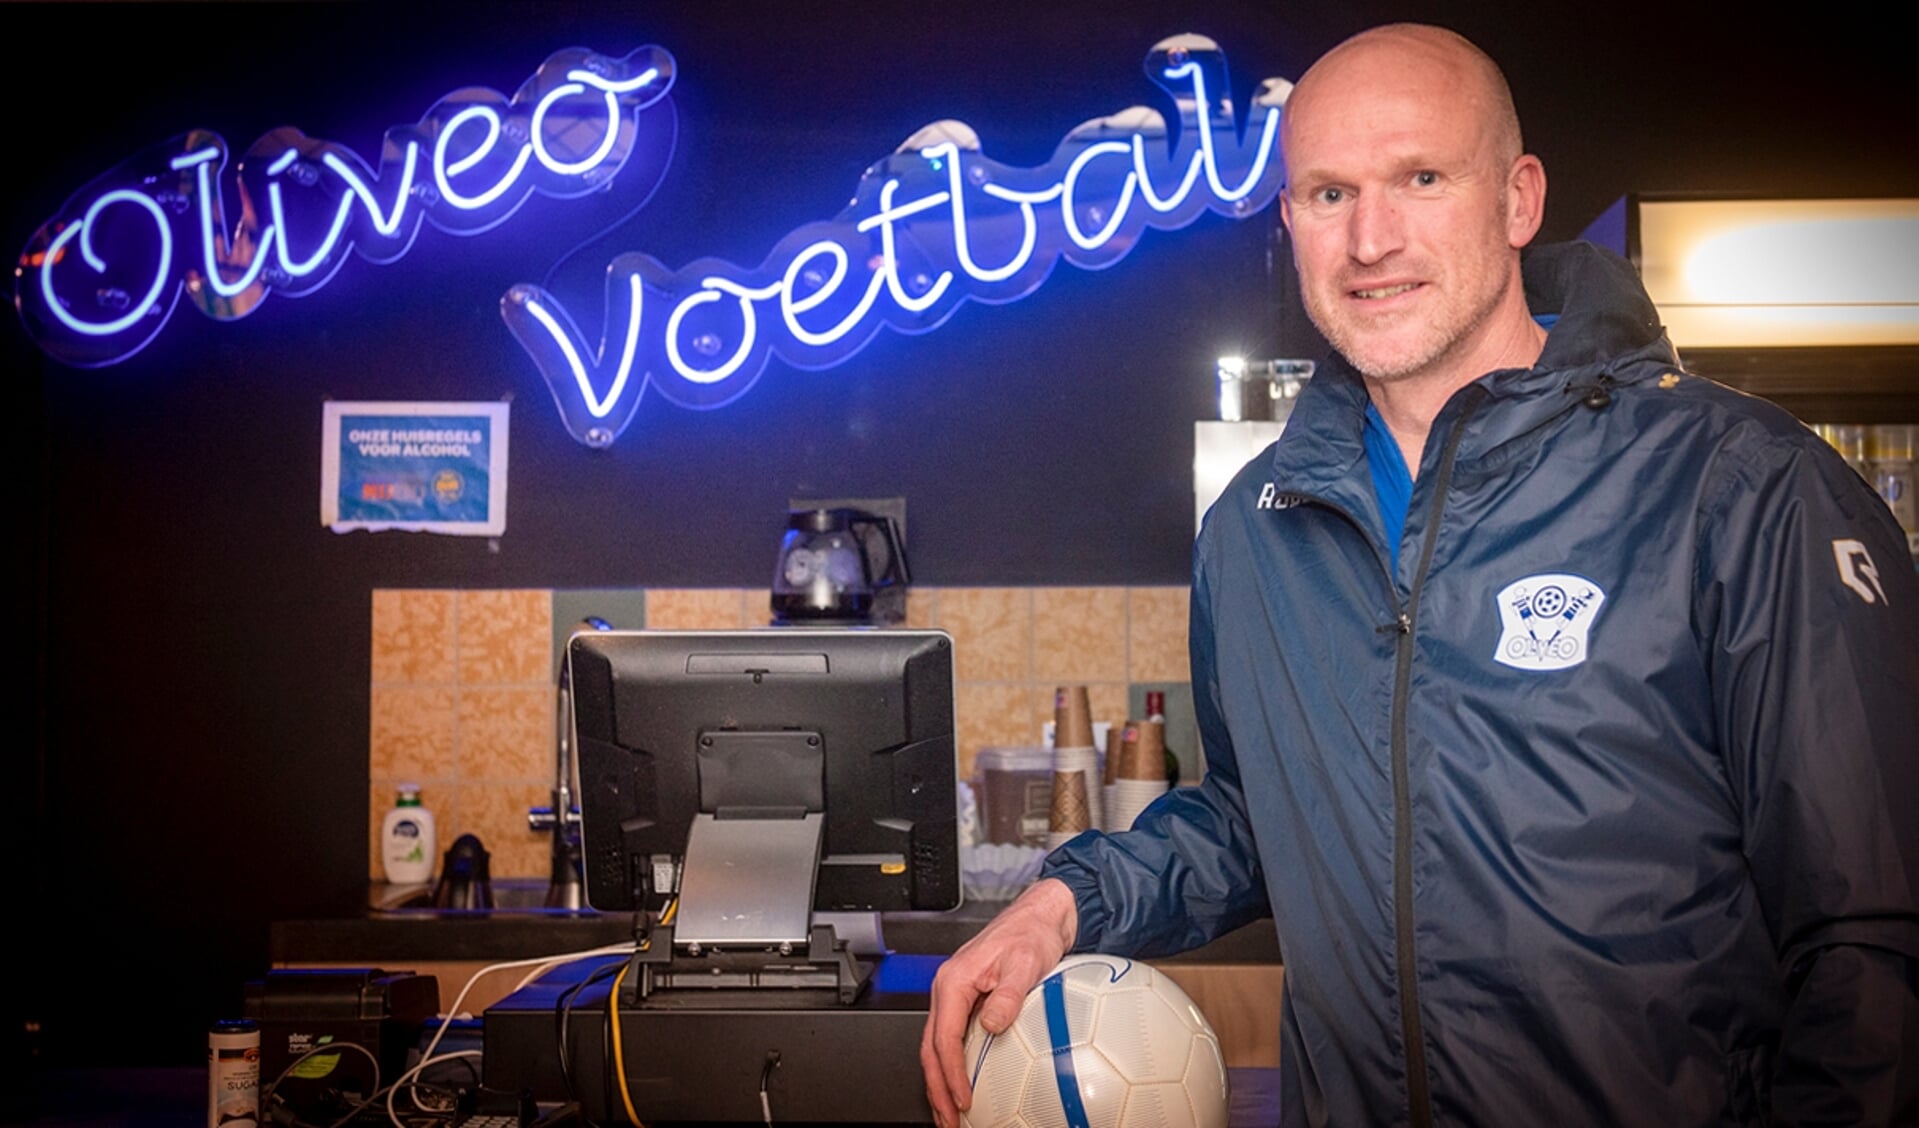 Martijn Langstraat speelde voor Vitesse Delft en Den Hoorn én is nu actief bij Oliveo: "Ik heb deze clubs in mijn hart gesloten". (foto: Roel van Dorsten)